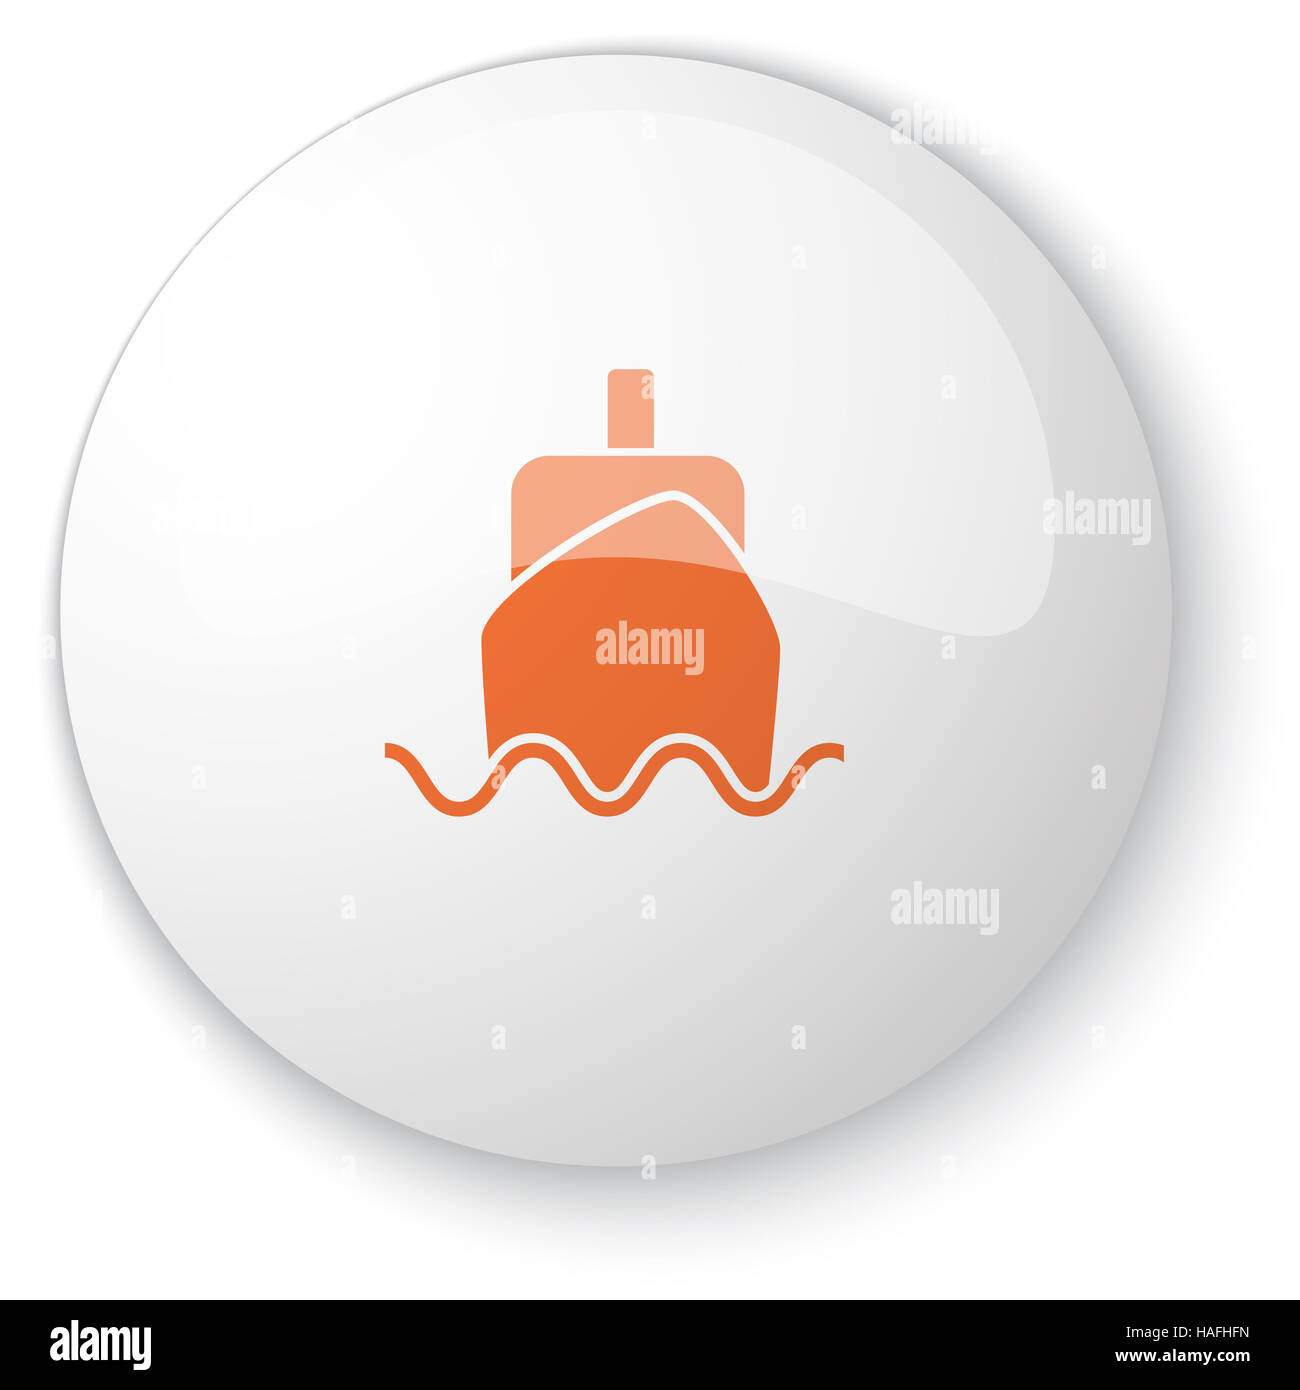 Blanc brillant avec bouton web icône bateau orange sur fond blanc Banque D'Images